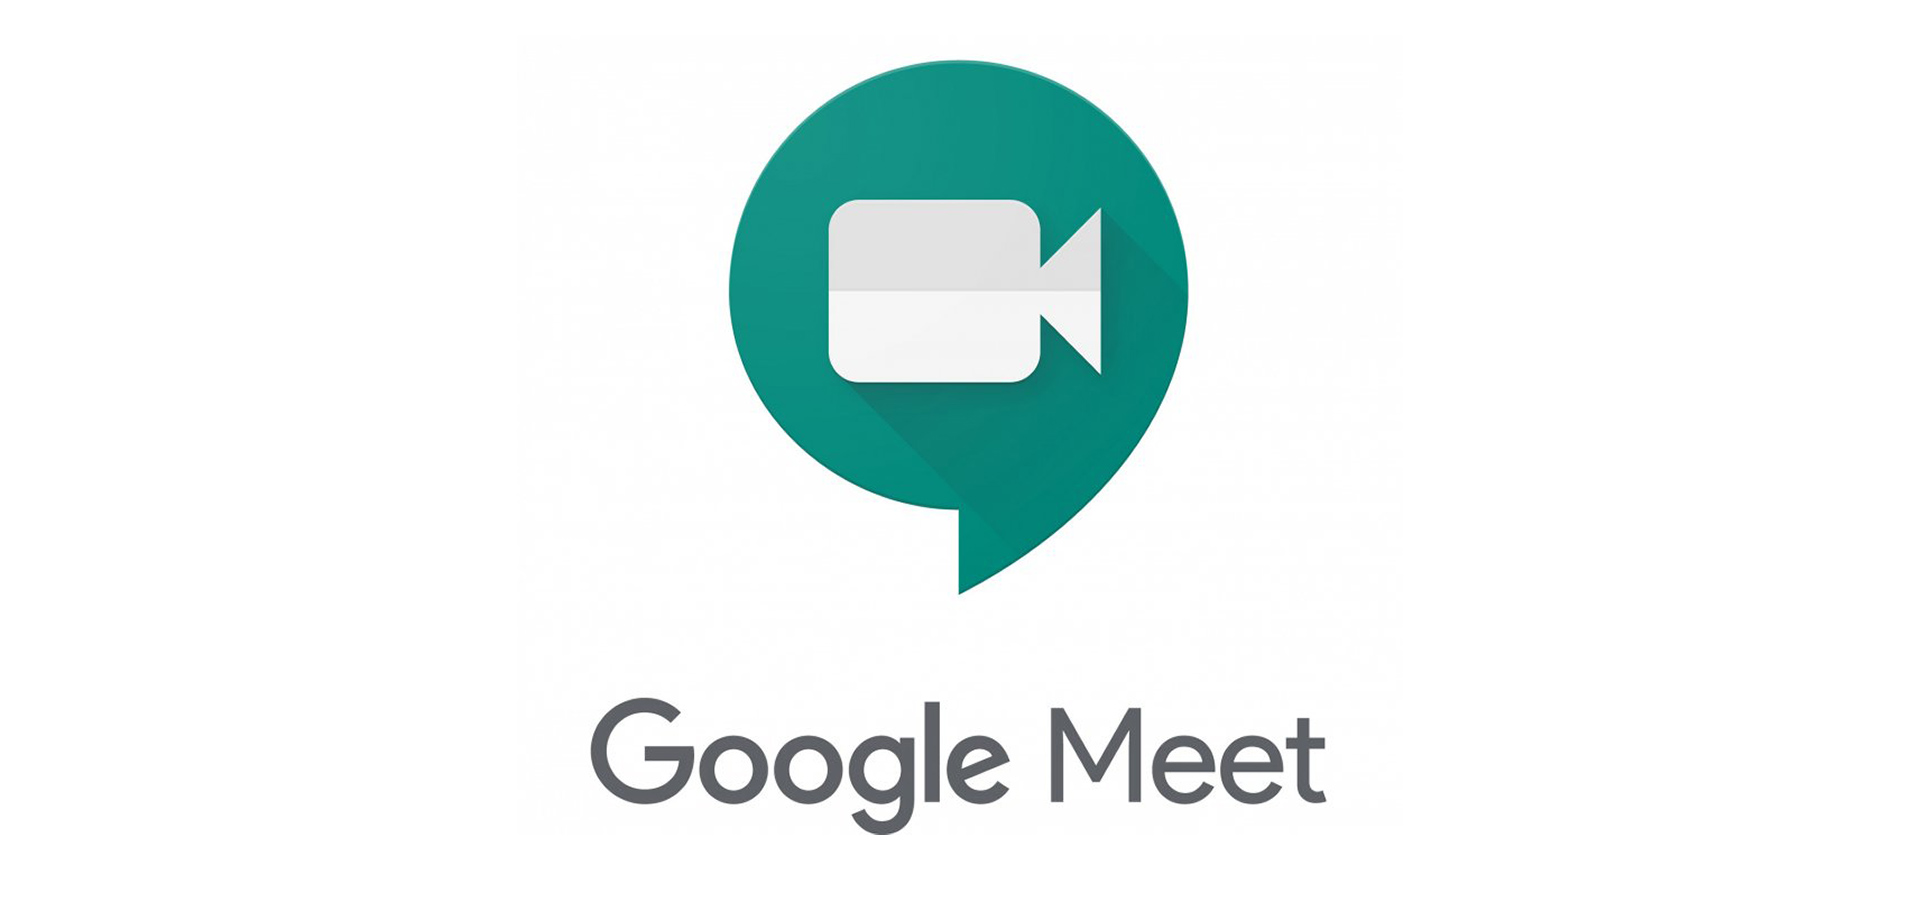 Google Meet Kelebihan